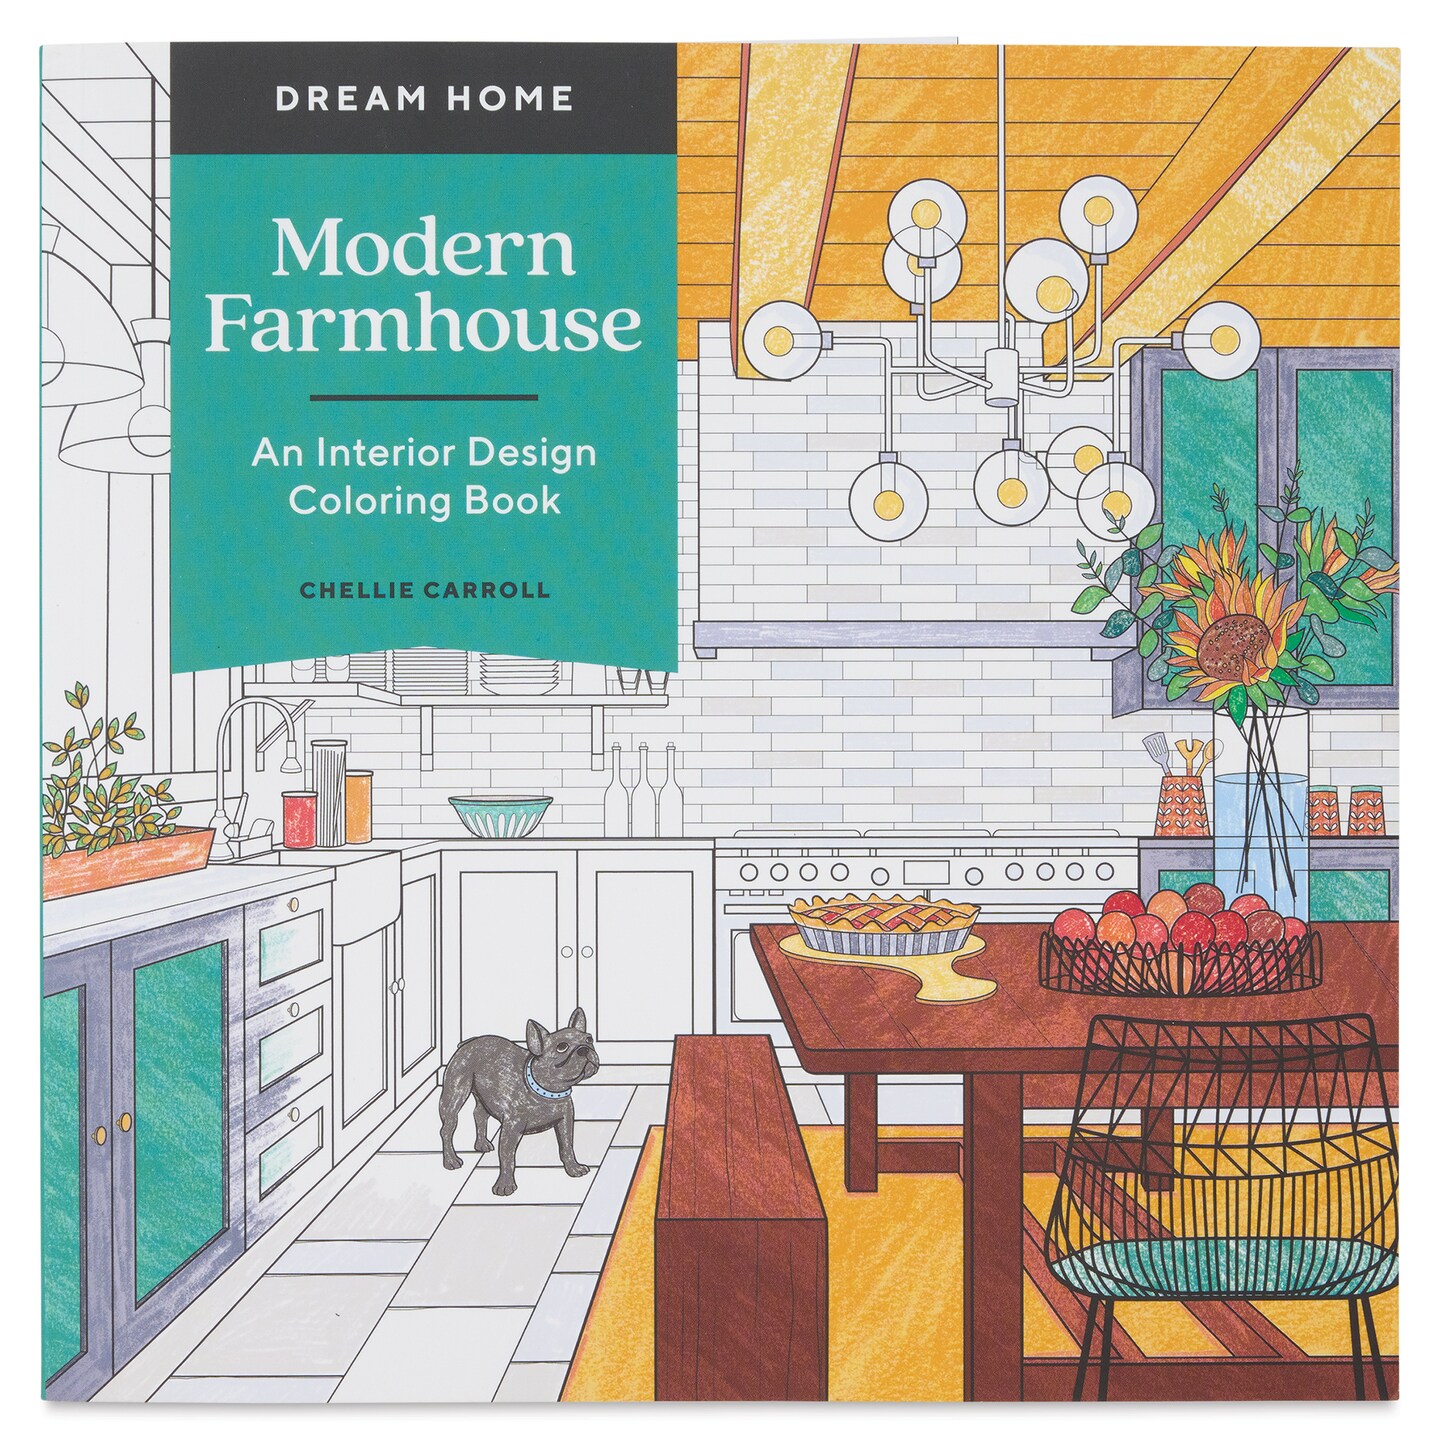 Modern Farmhouse: An Interior Design Coloring Book